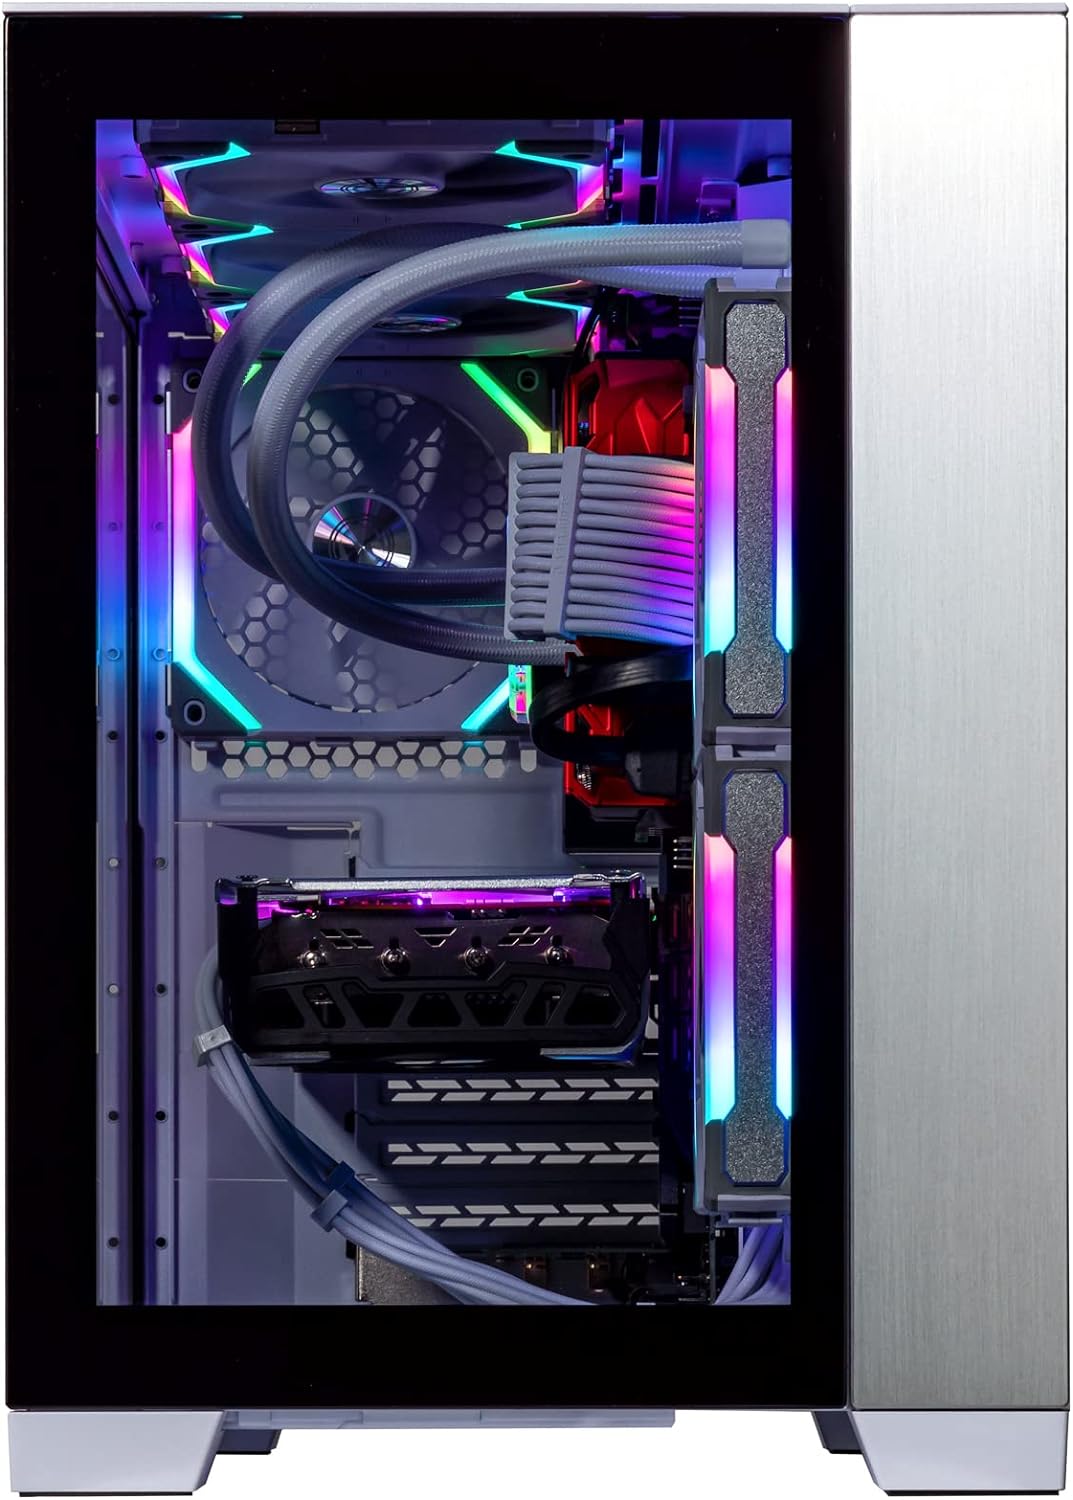 Velztorm Mini Lux Gaming Desktop PC (AMD Ryzen 9 5950X 16-Core, Radeon RX 7900 XT, 32GB RAM, 512GB PCIe SSD + 1TB HDD (3.5), WiFi, USB 3.2, HDMI, Display Port, Win 10 Pro)